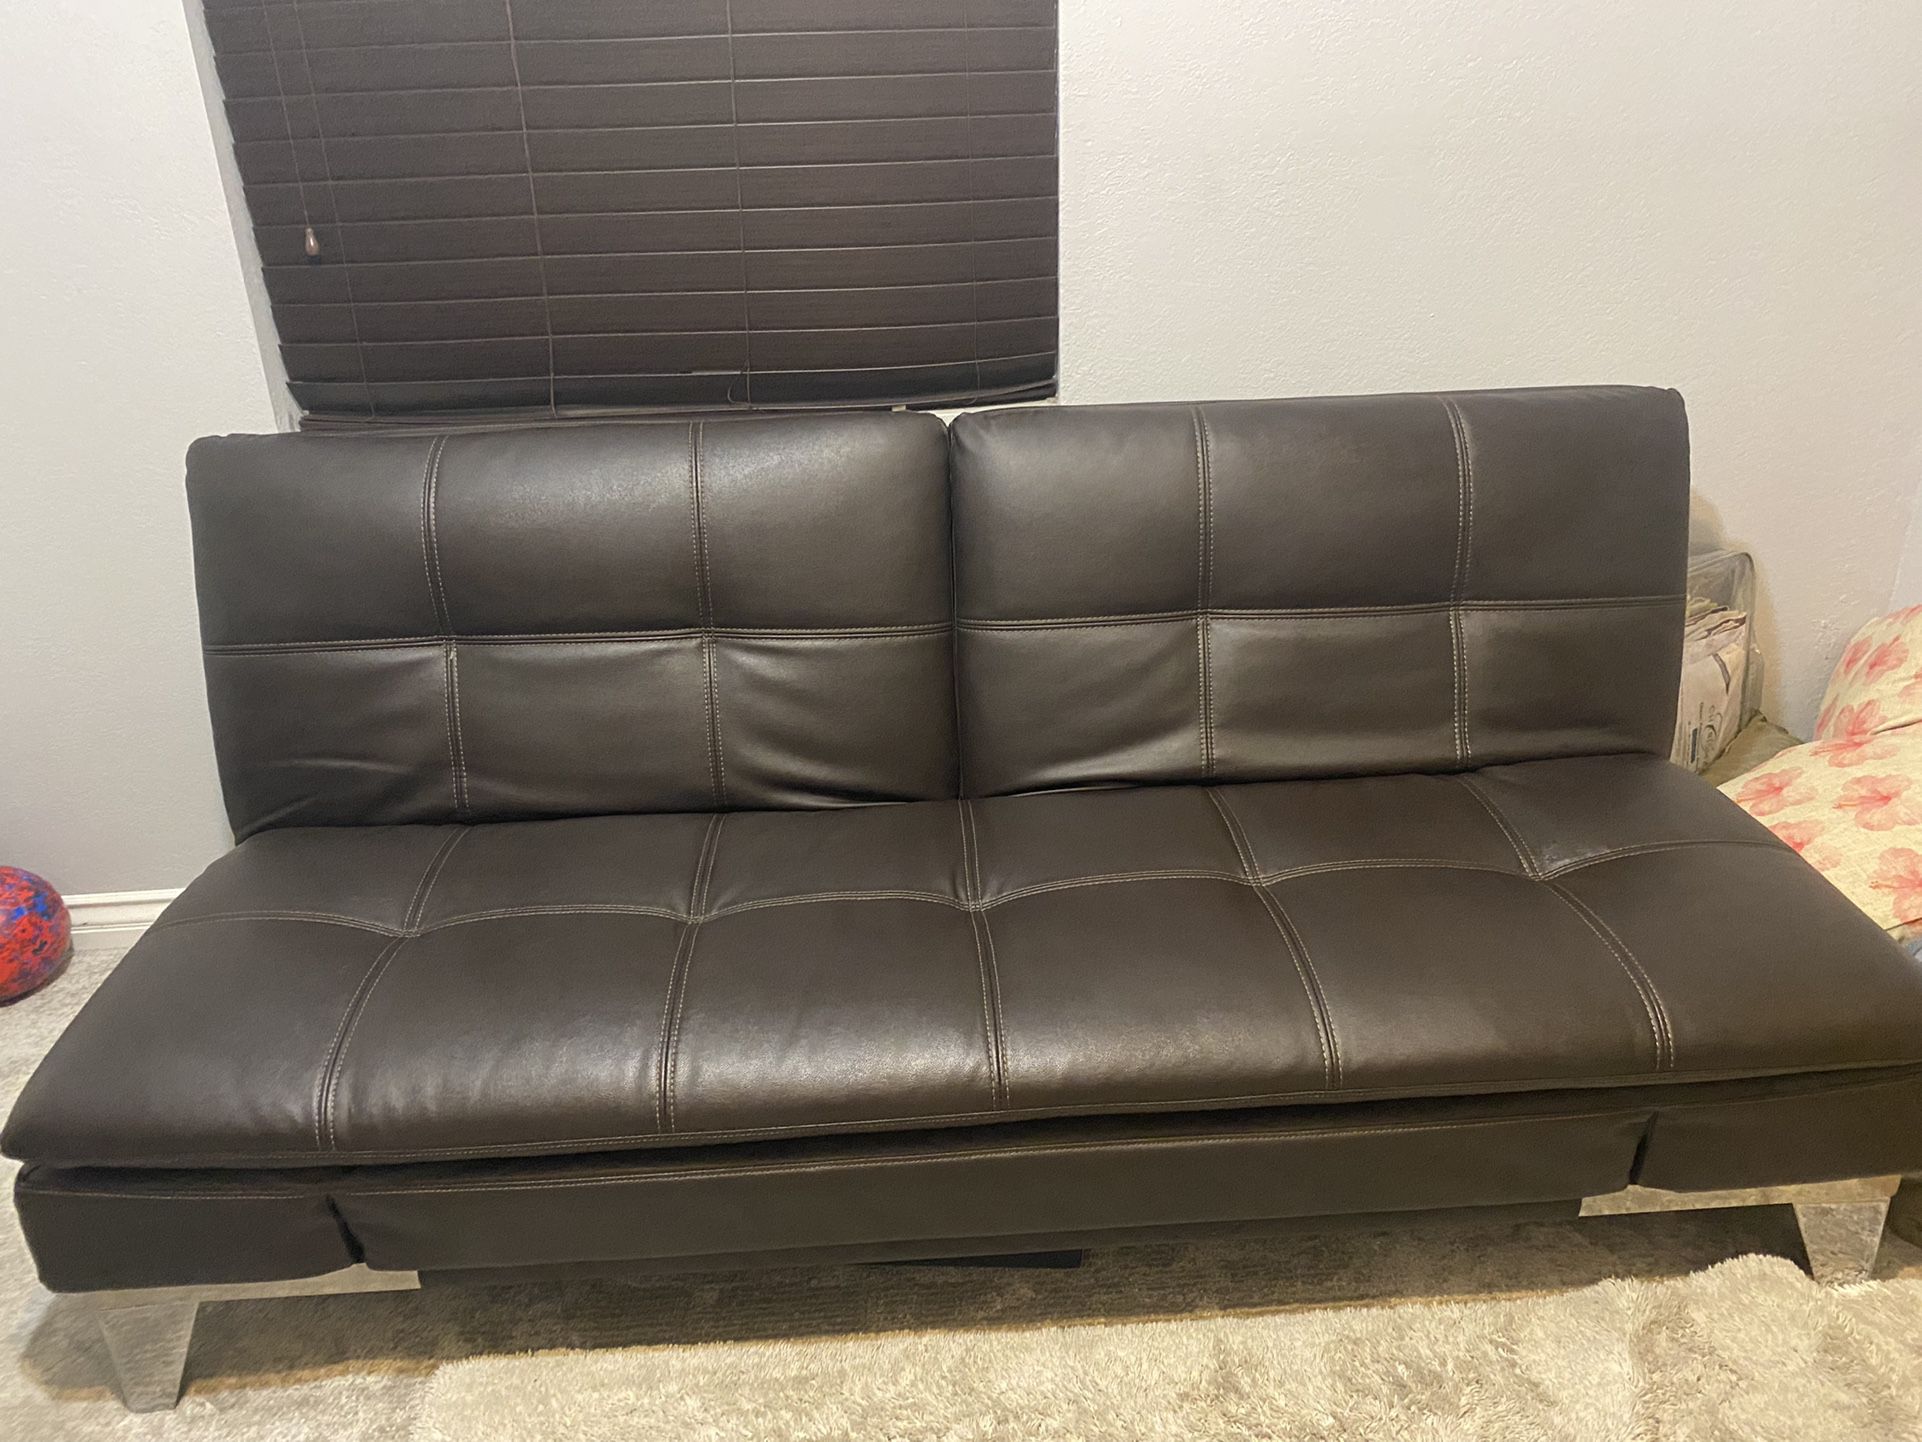 Eurolounger Convertible Couch (Futon)